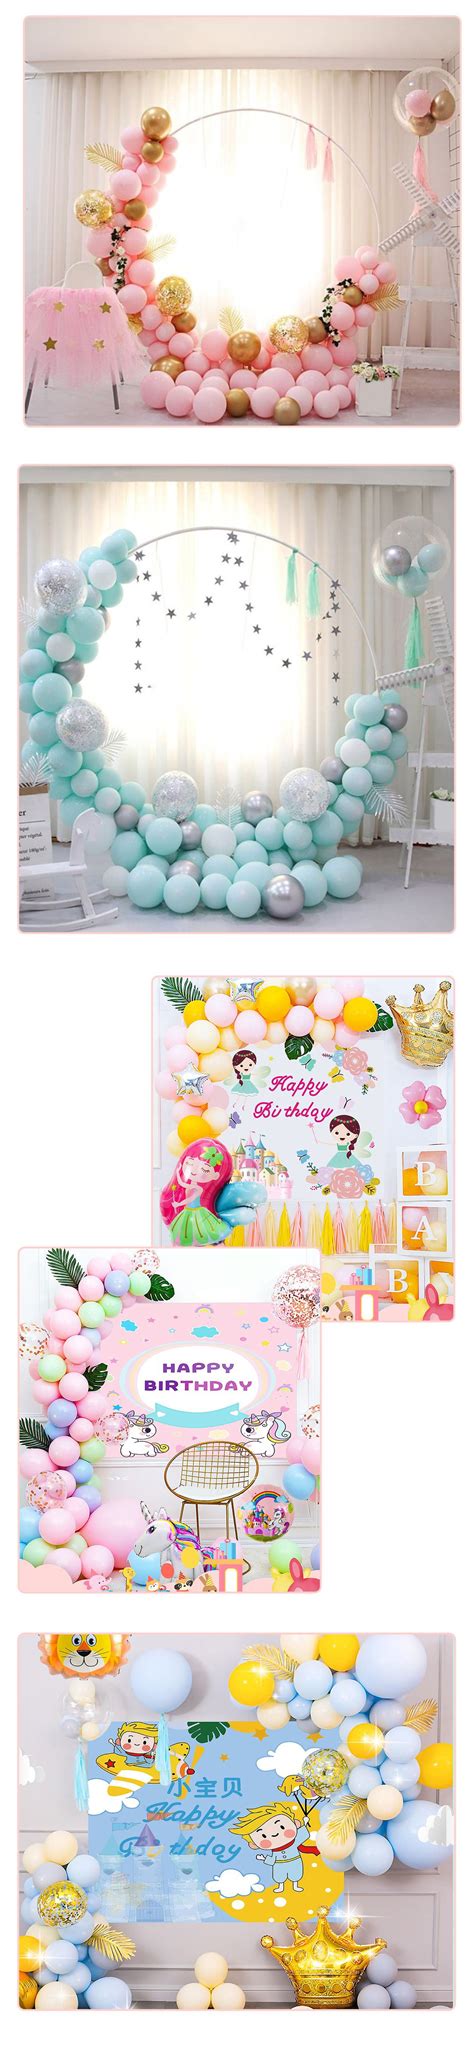 气球套装桌飘地周岁生日布置装饰快乐场景派对用品开业结婚庆婚房-阿里巴巴